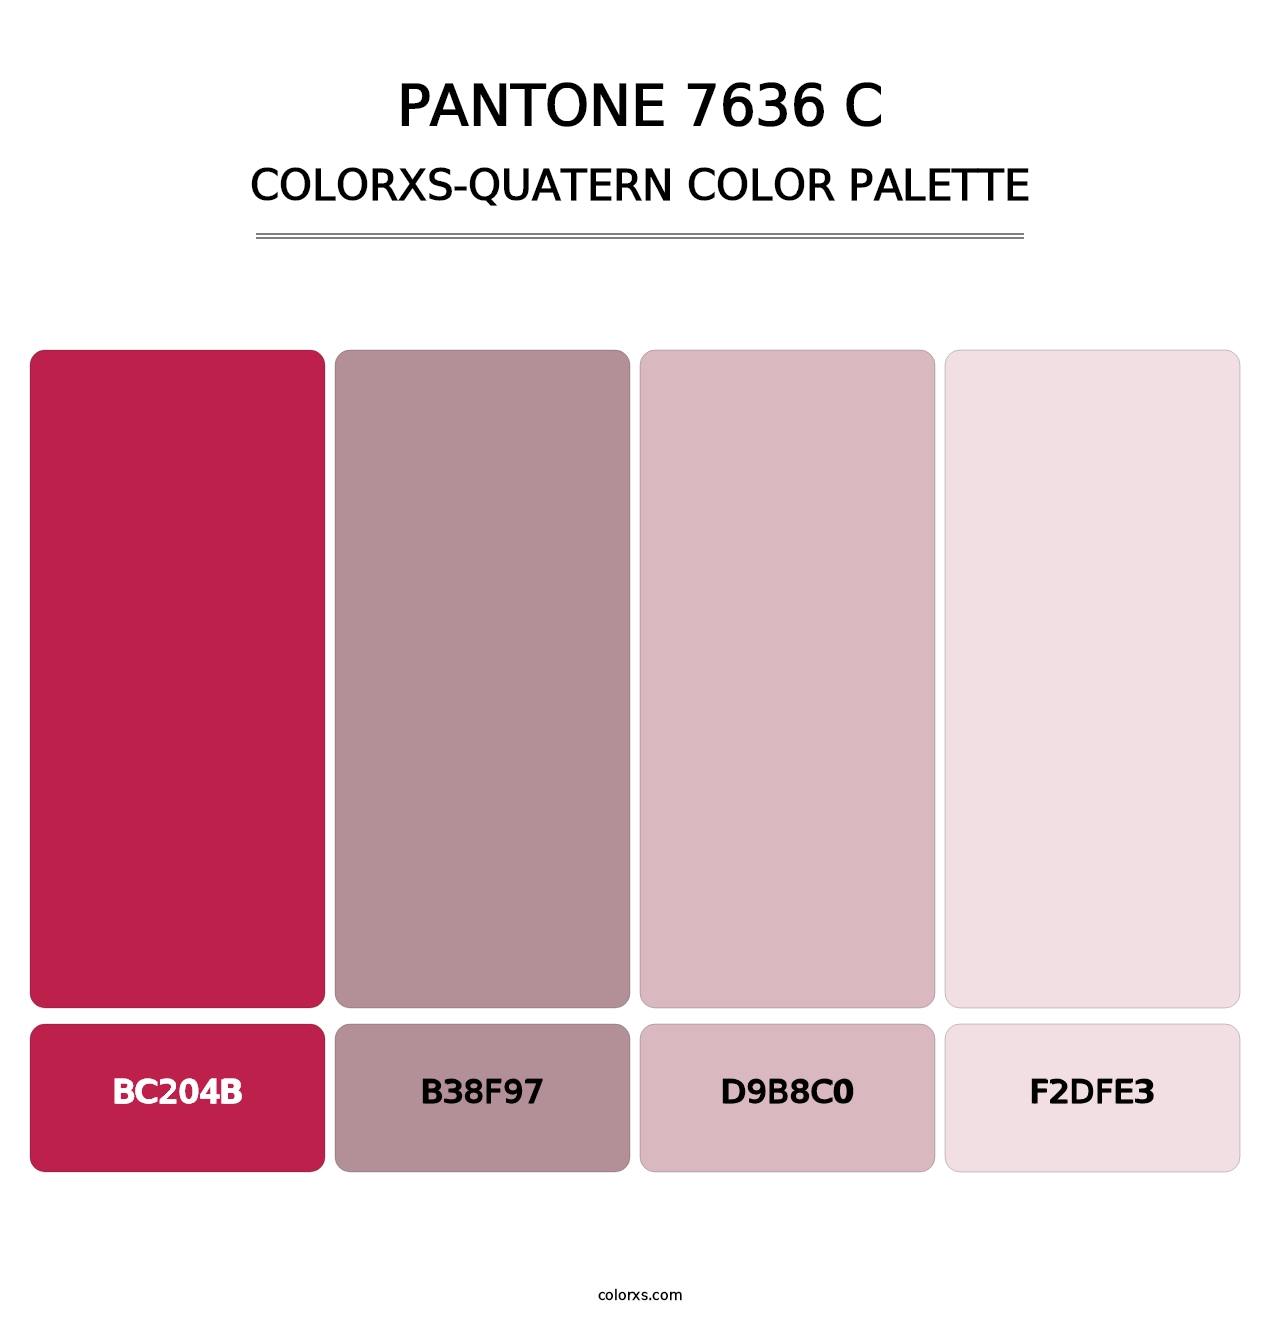 PANTONE 7636 C - Colorxs Quatern Palette